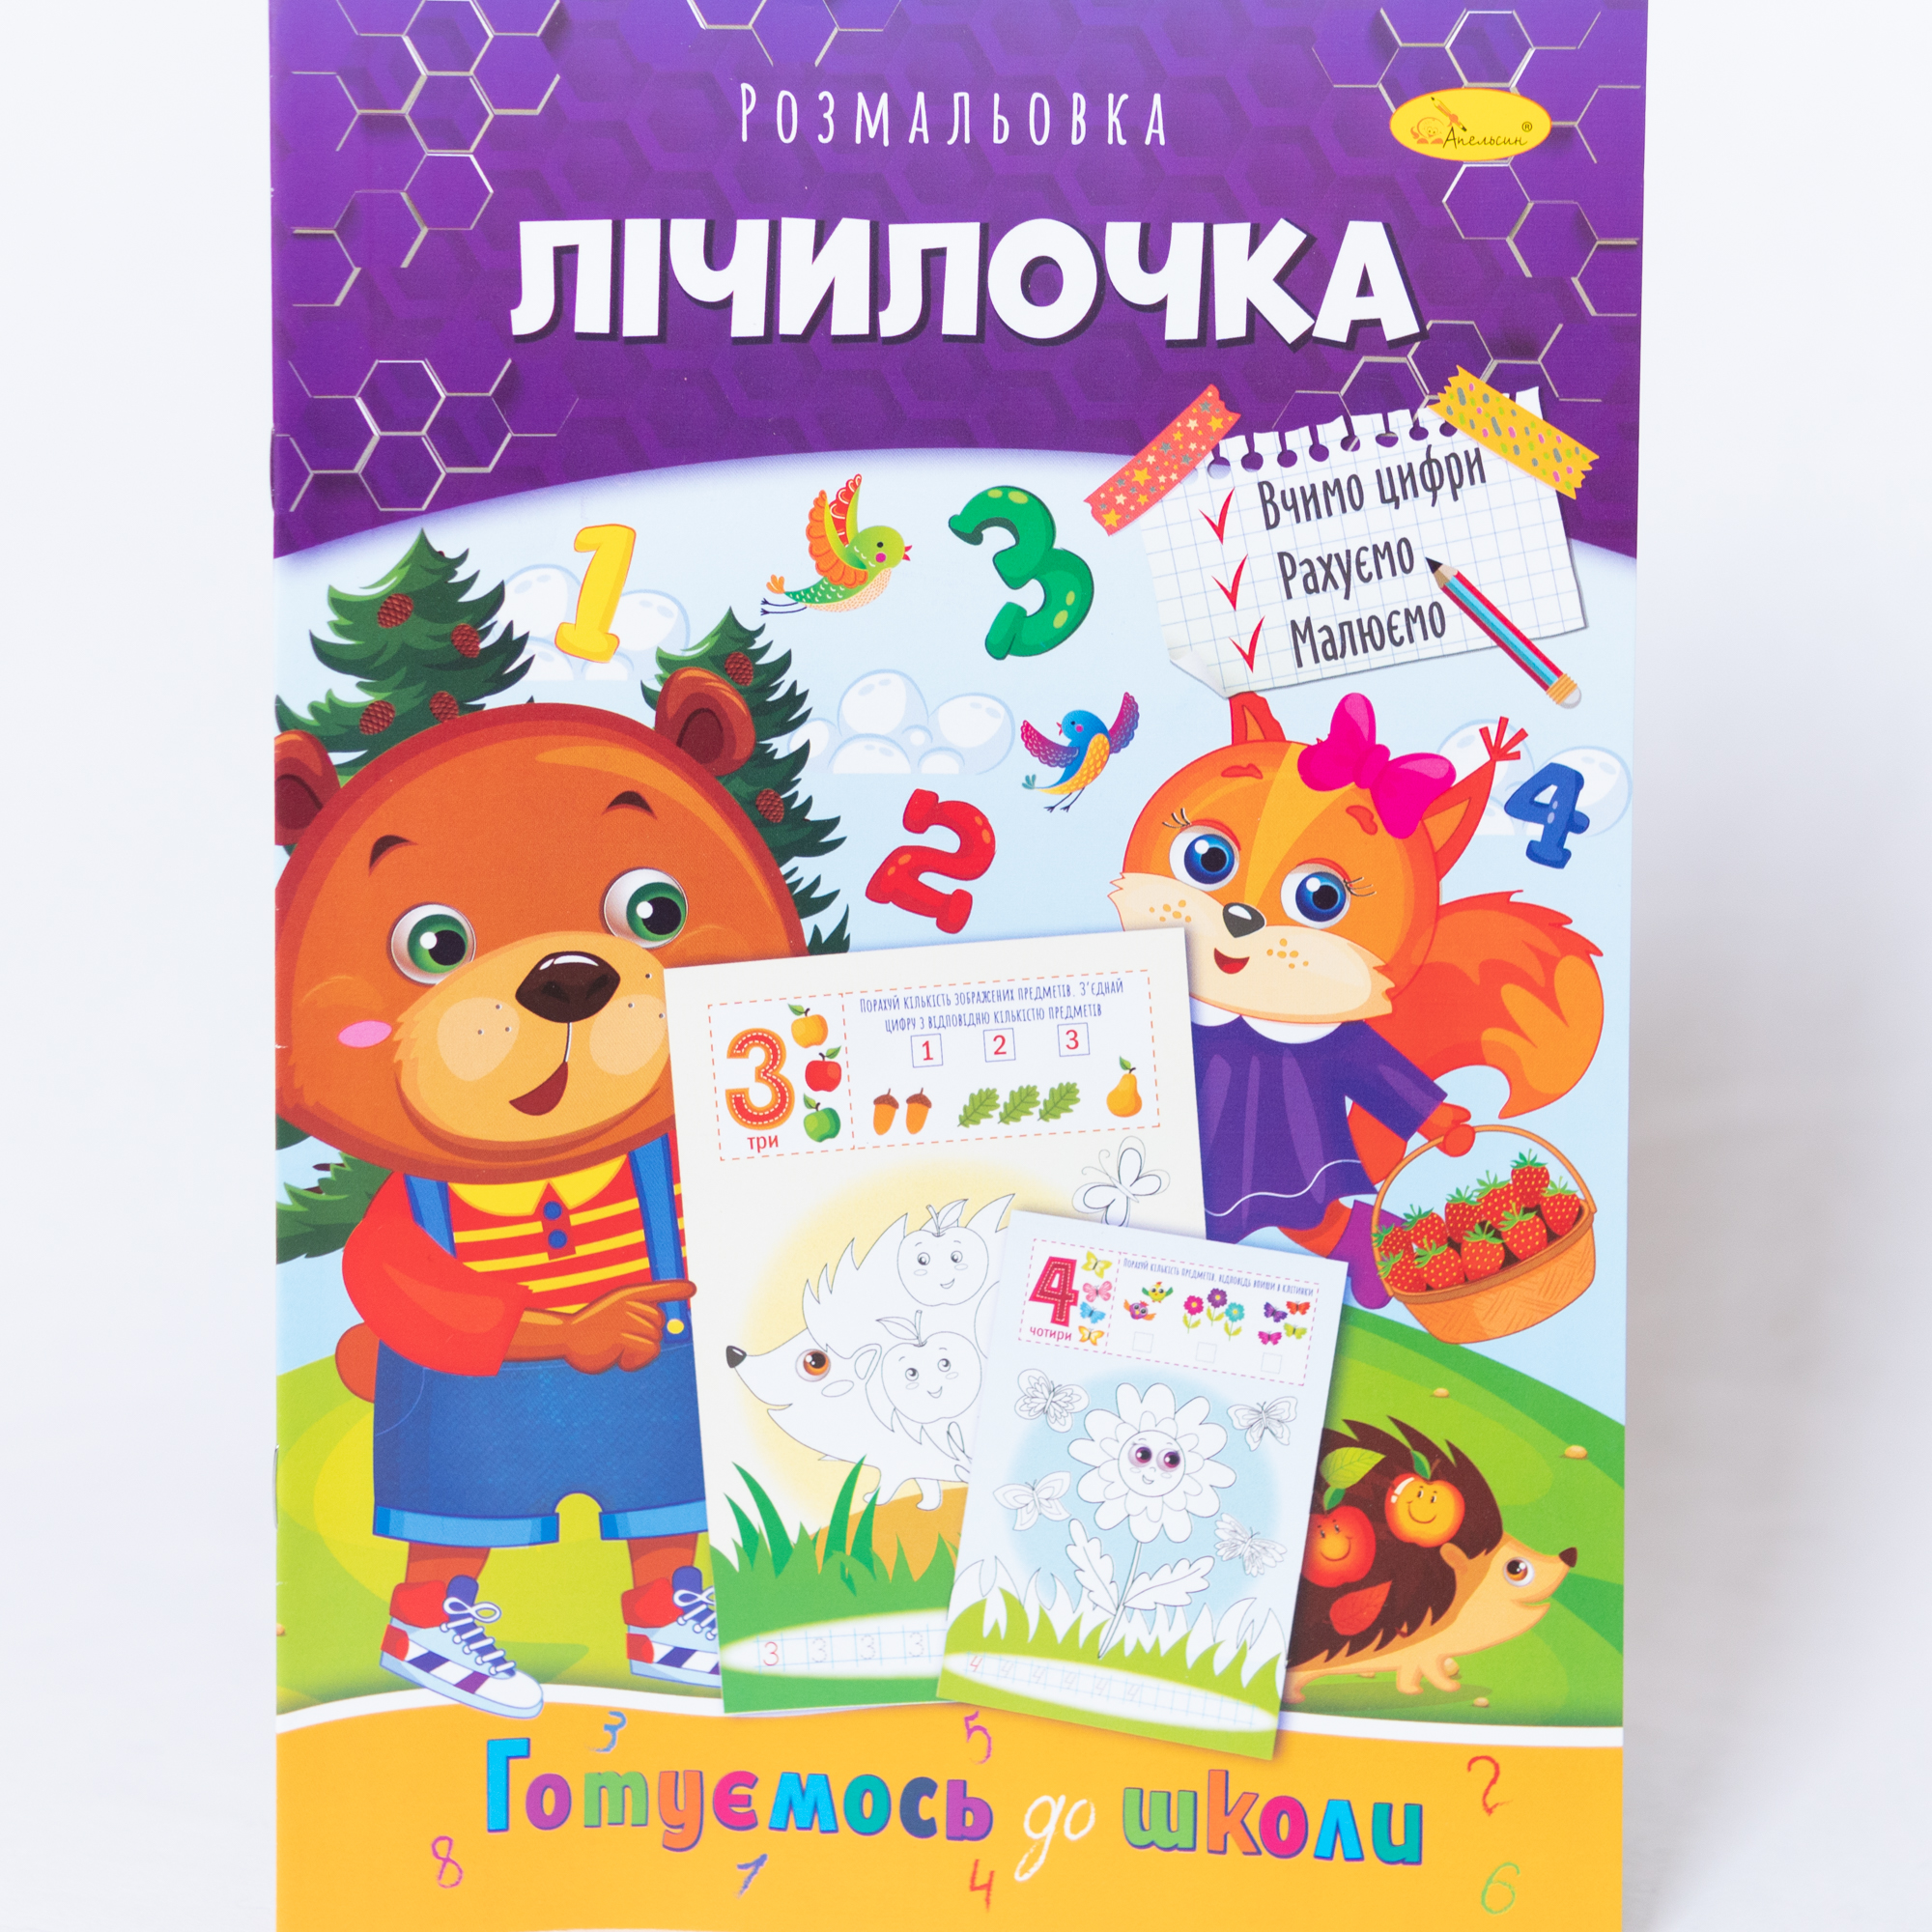 Malbuch für Kinder Farben Kreativität ukrainische Sprache Ausmalbild Zählreim Vorbereitung auf die Schule